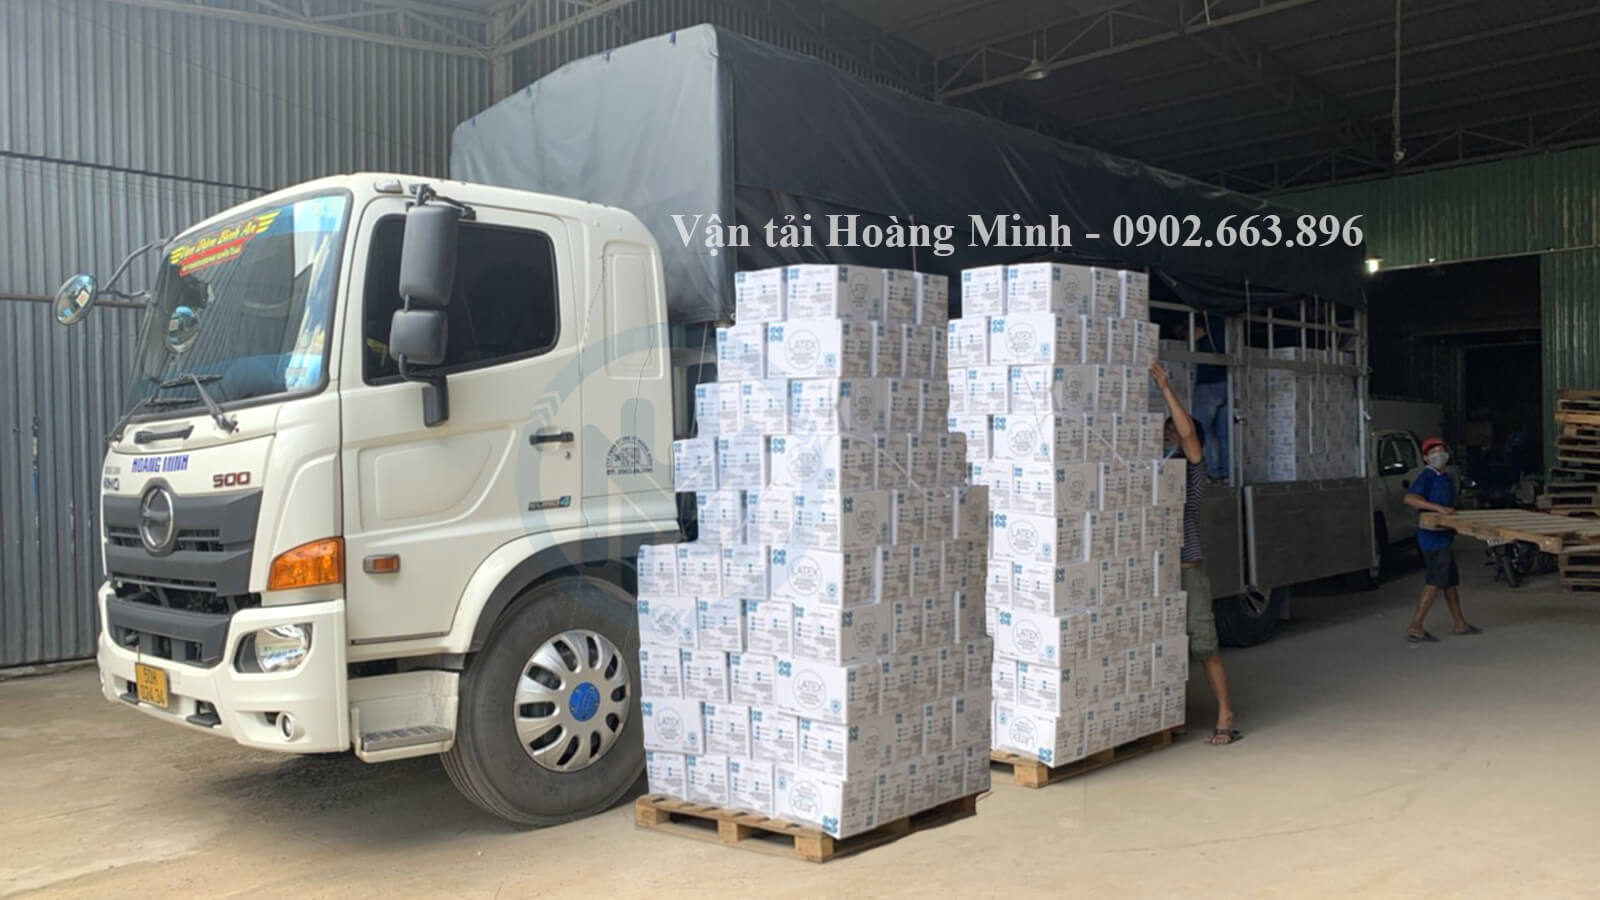 Hình ảnh xe tải Hoàng Minh đang sắp xếp chở hàng hoá bột trét đi Cà Mau.jpg